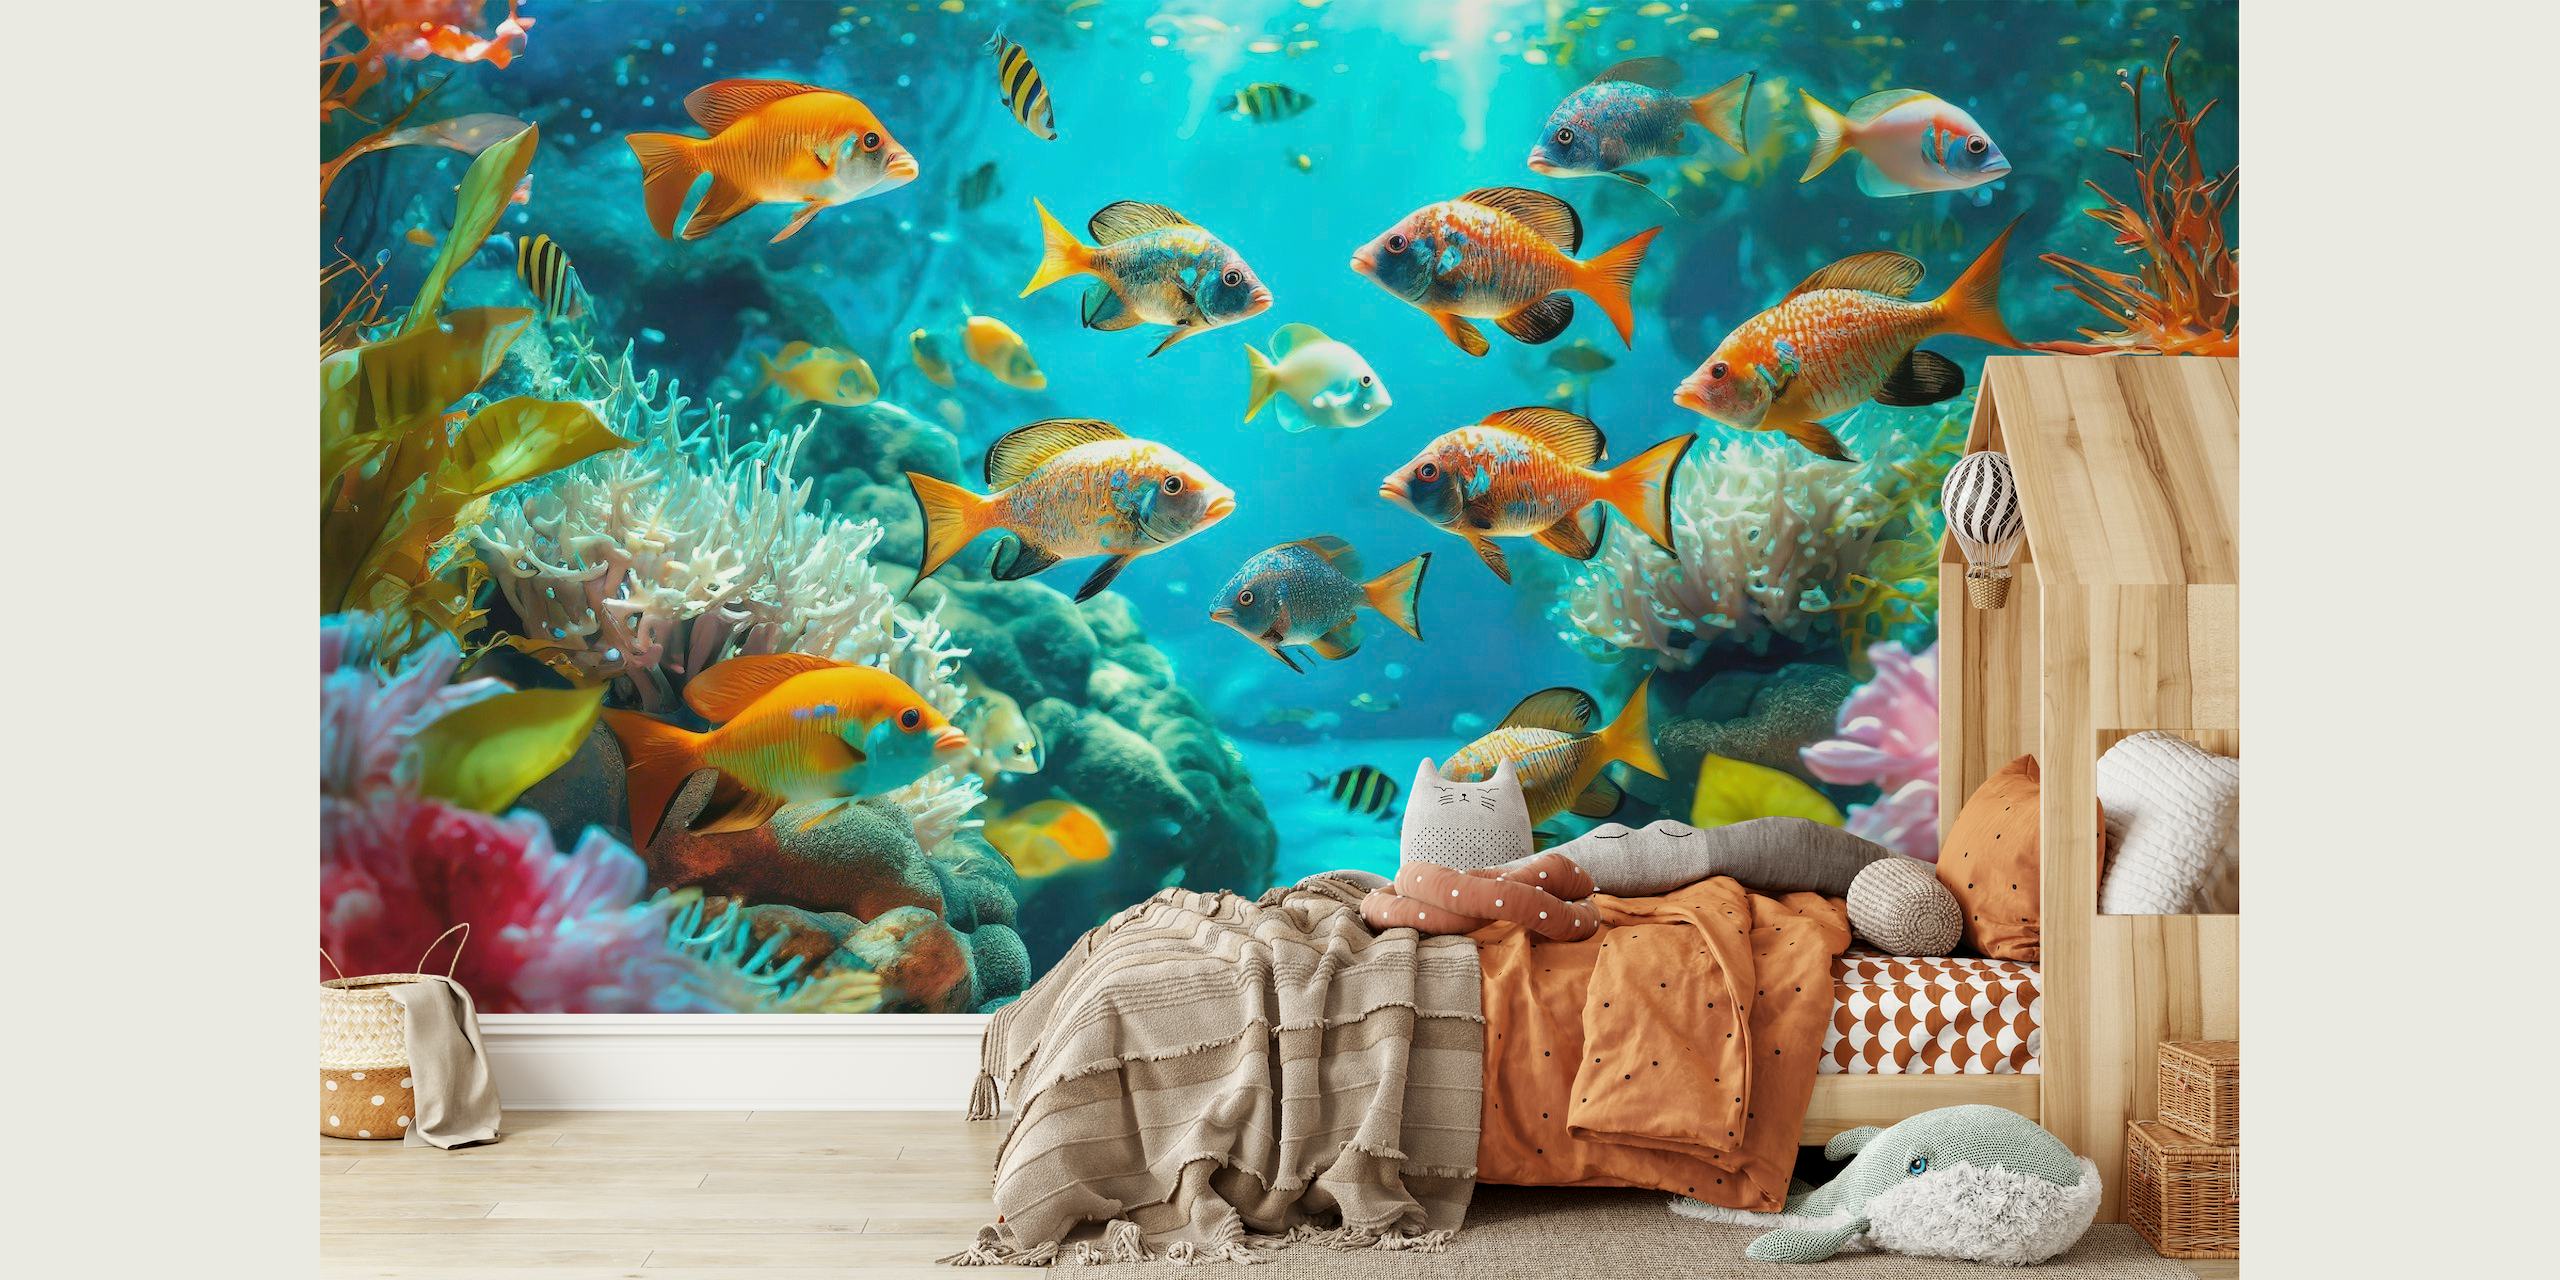 Um vibrante mural de parede subaquático com peixes coloridos nadando entre corais